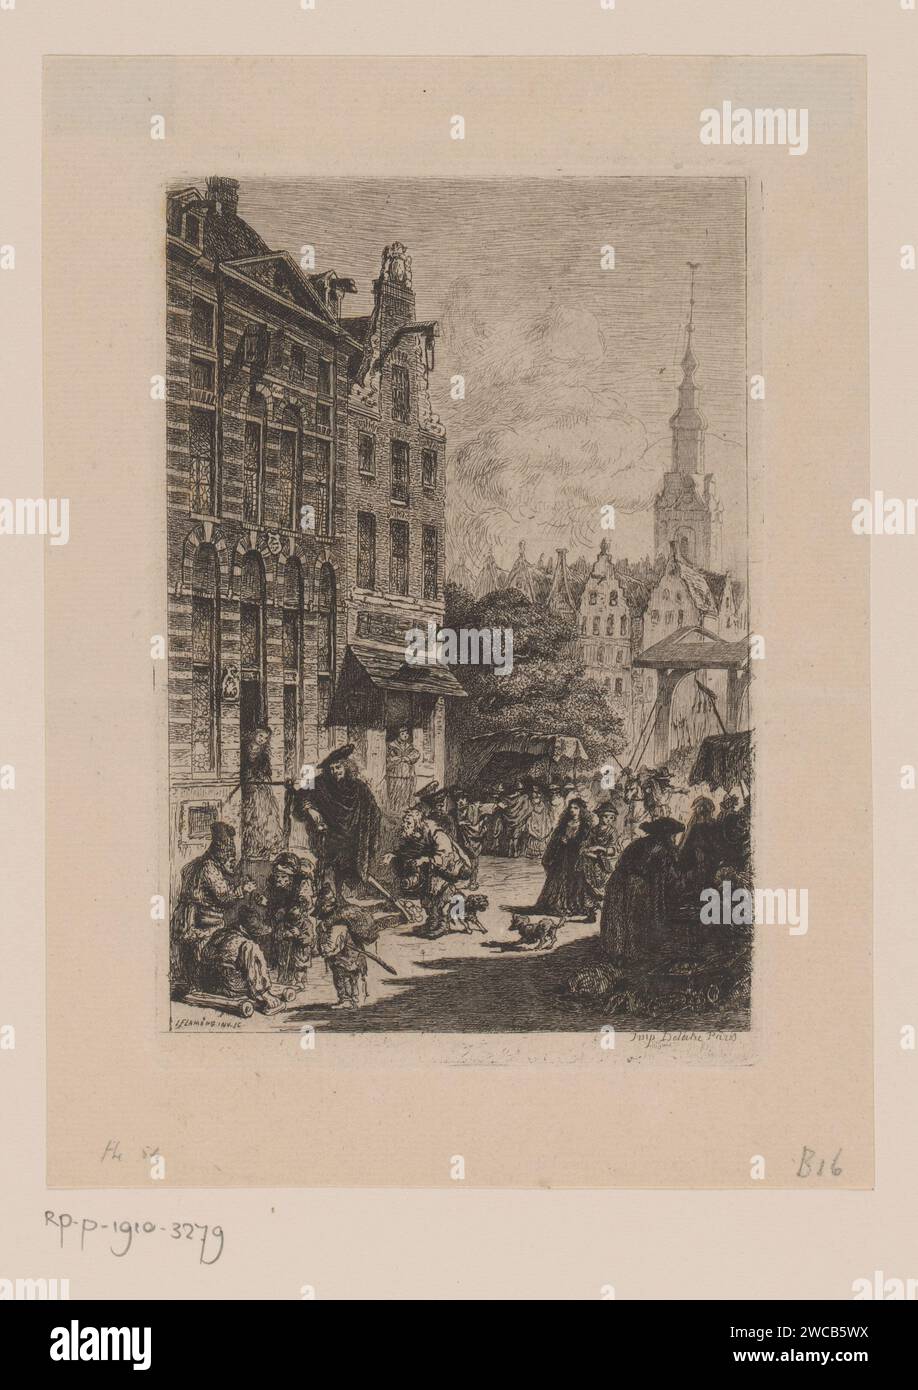 Blick auf Rembrandts Haus im Jodenbreestraat in Amsterdam, 1859 Druck Paris Papier, das das übliche Haus oder die Reihe von Häusern Jodenbreestraat graviert Stockfoto